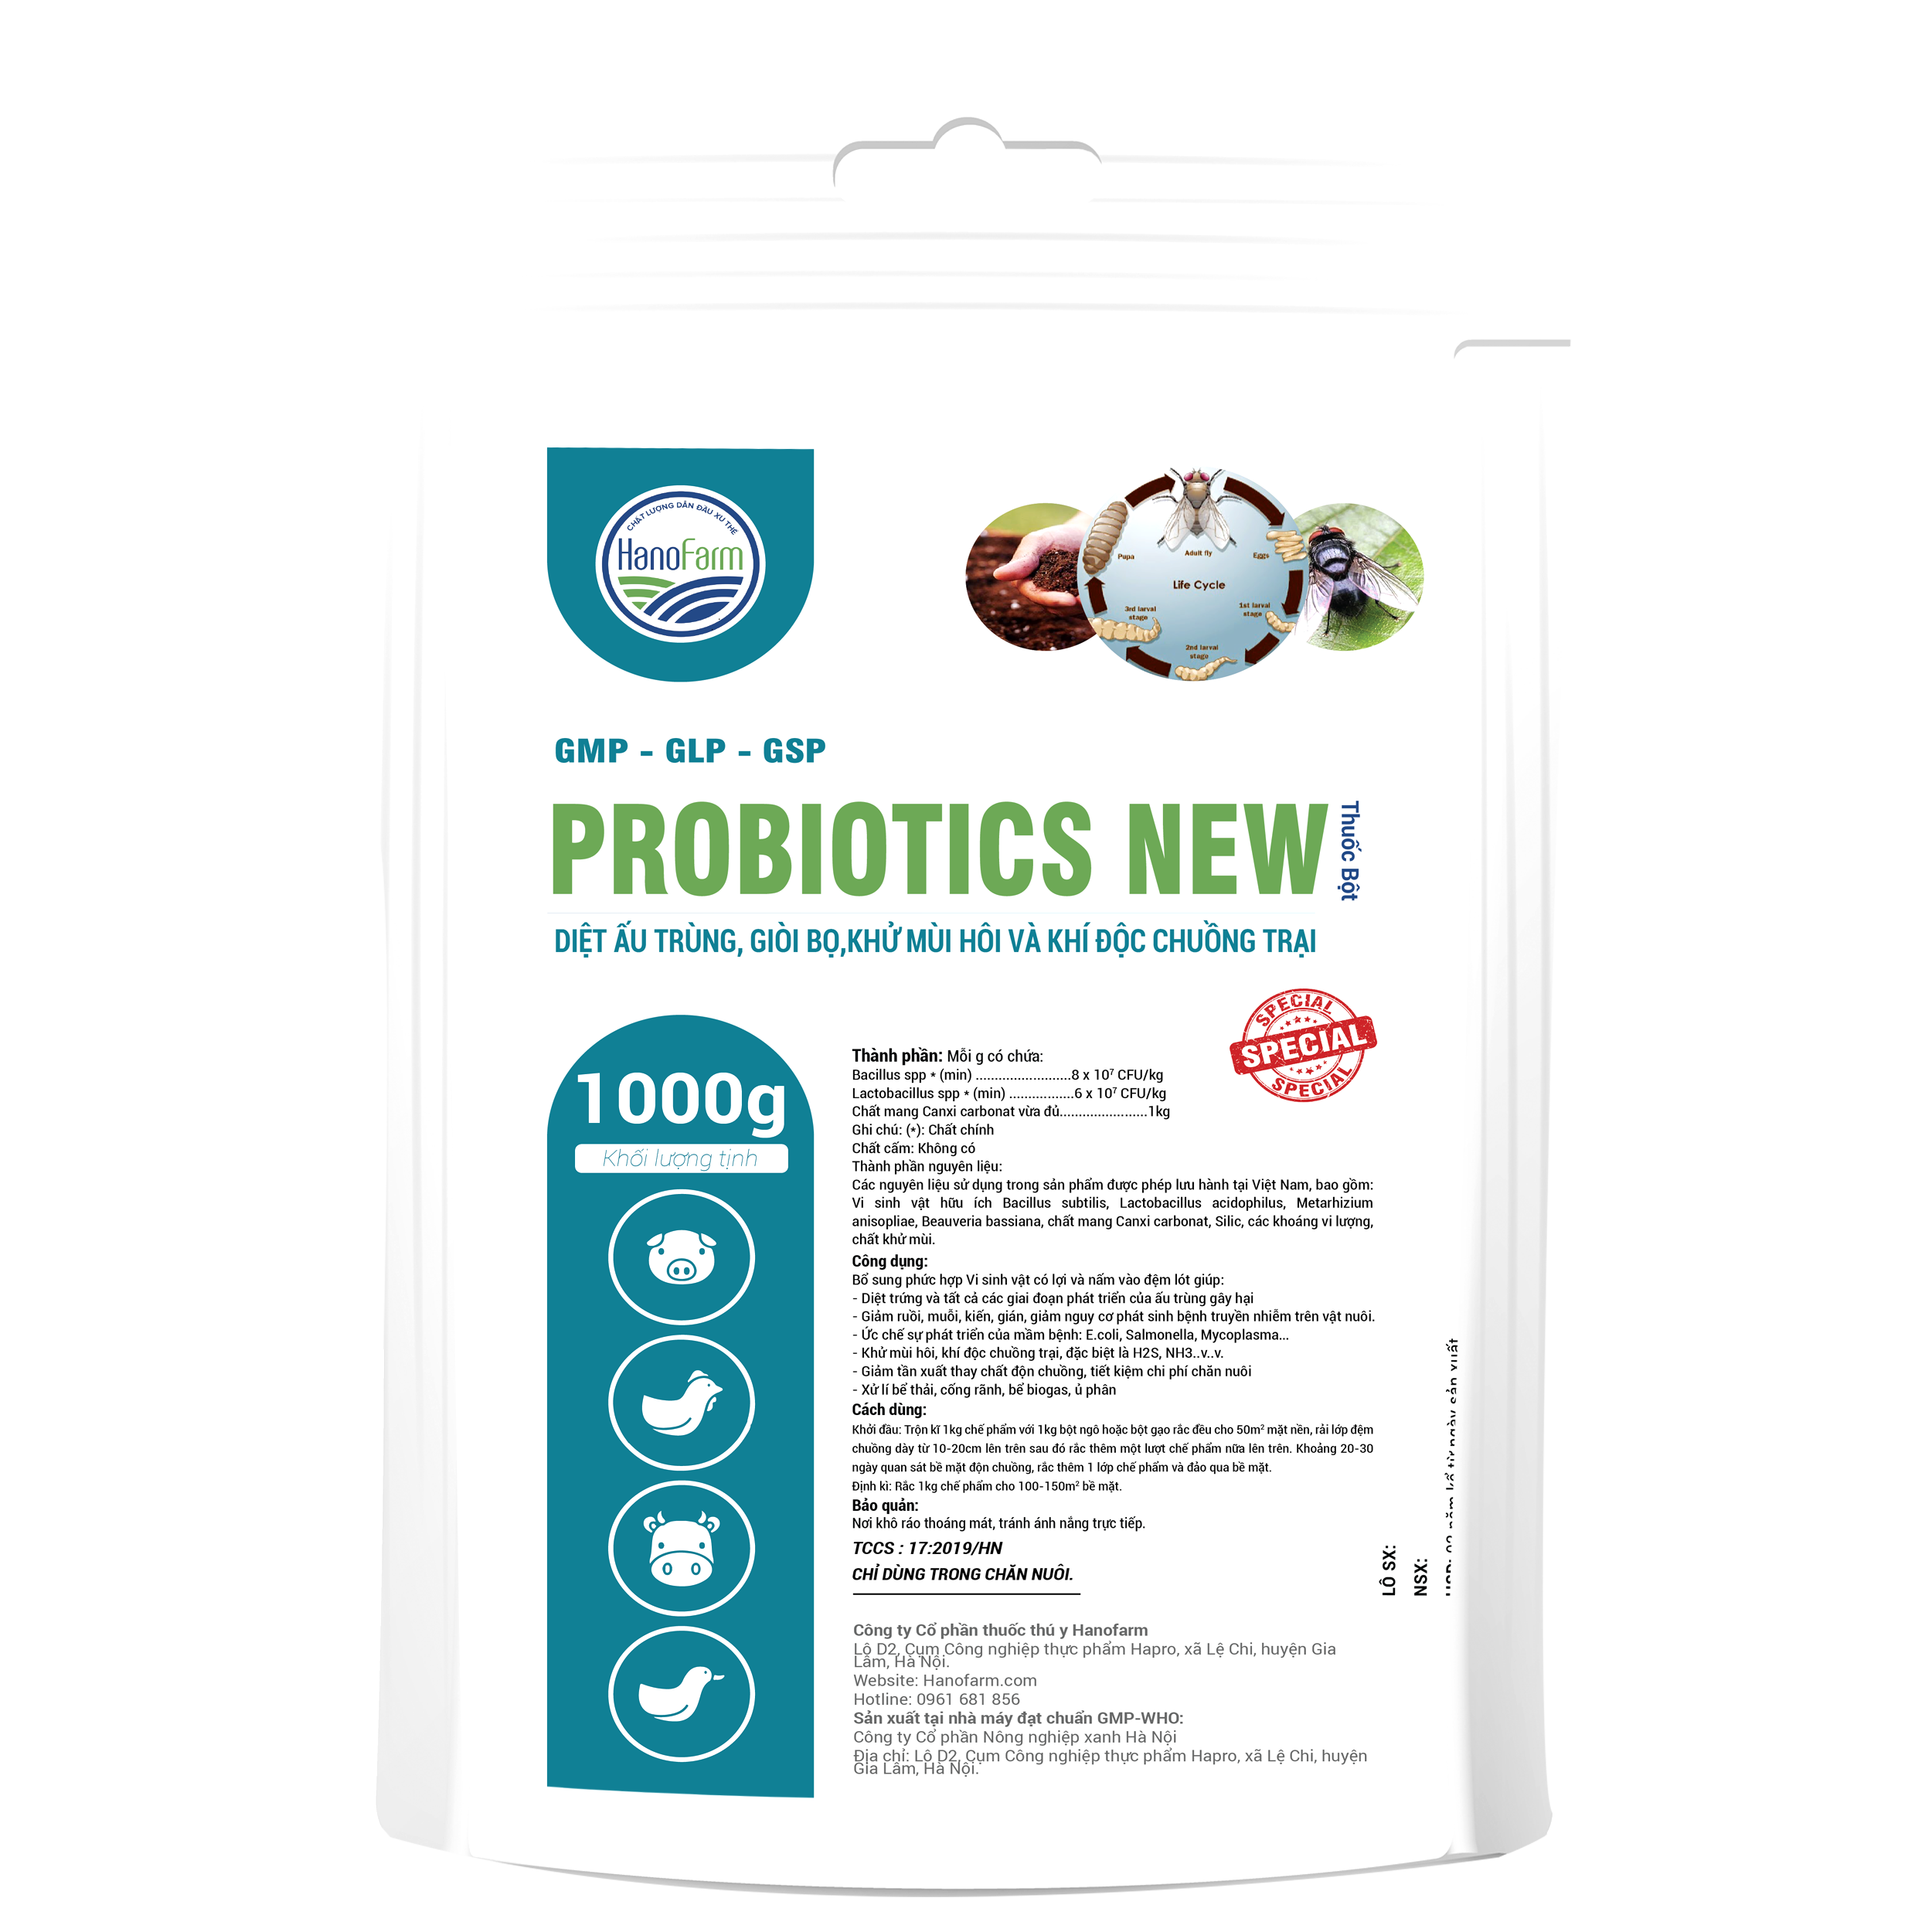 probiotic new